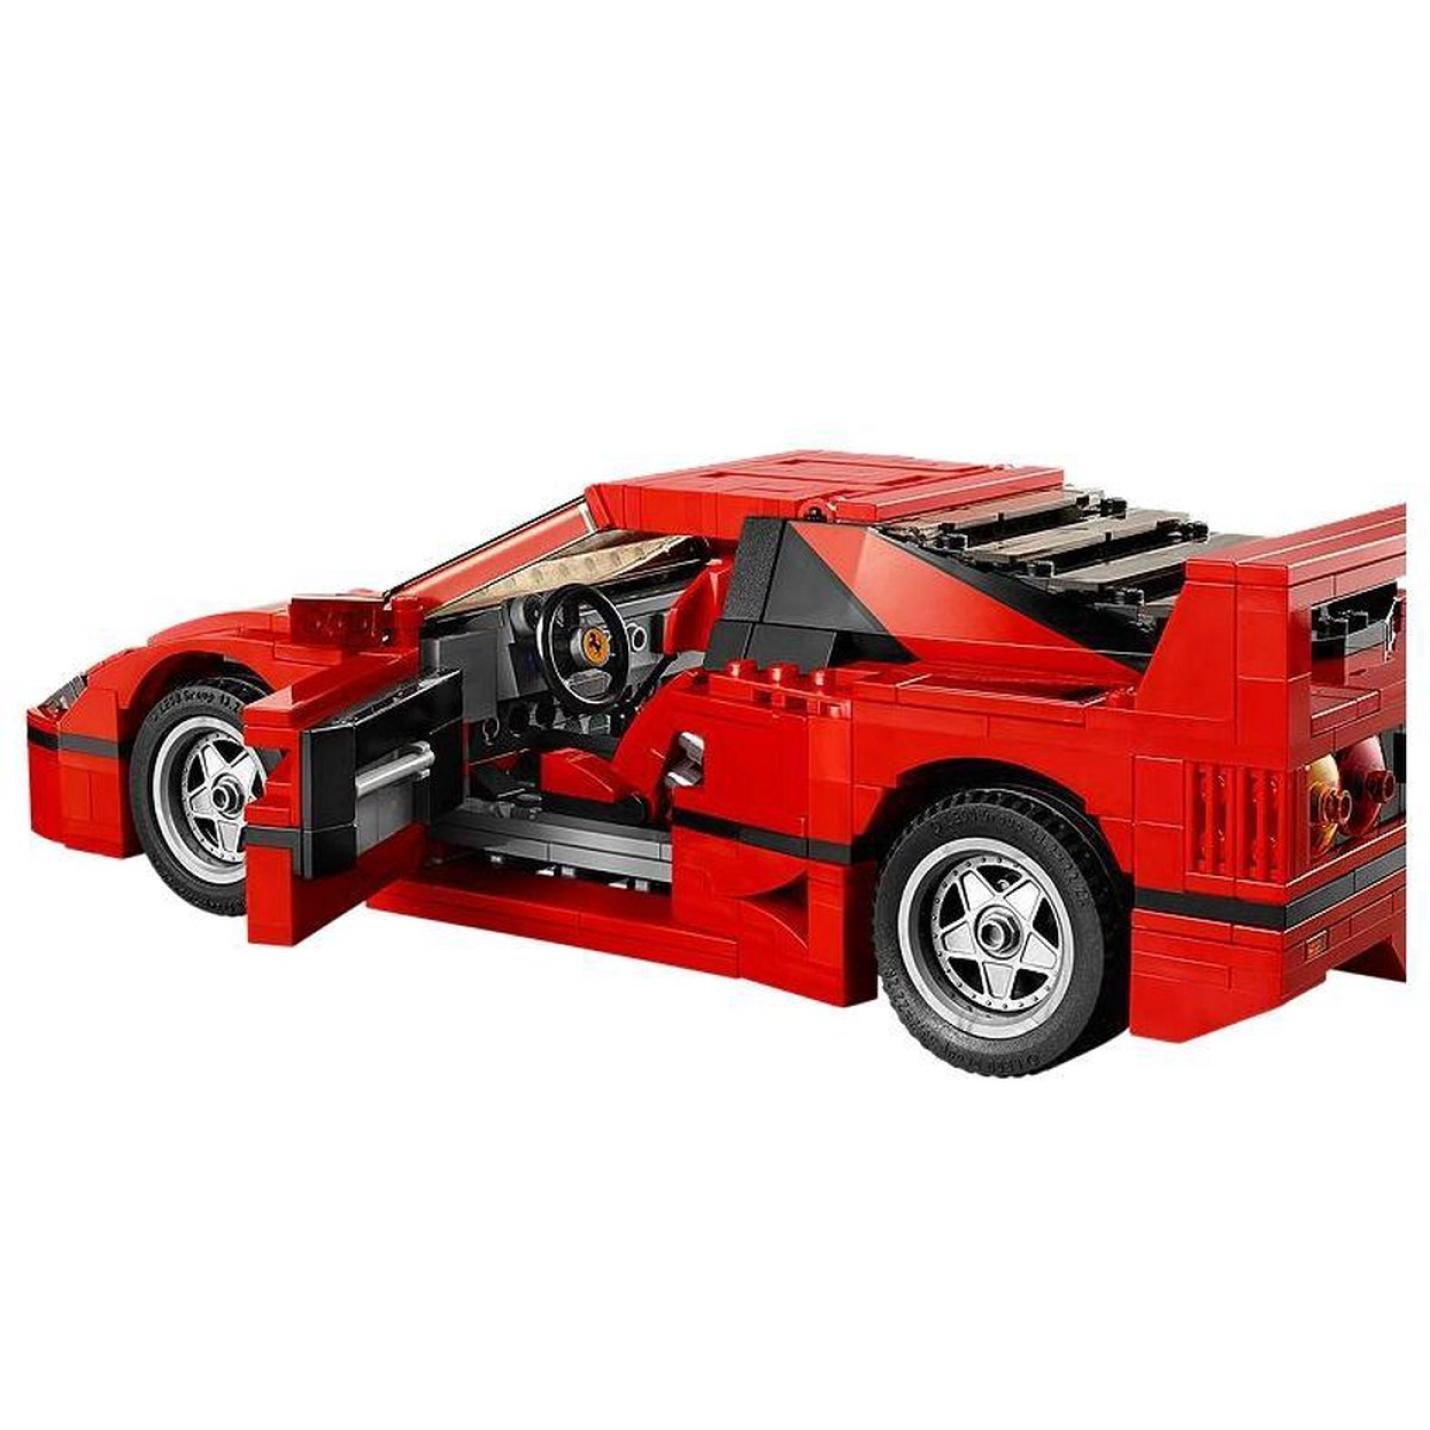 LEGO Creator Expert Ferrari F40 - 10248 13